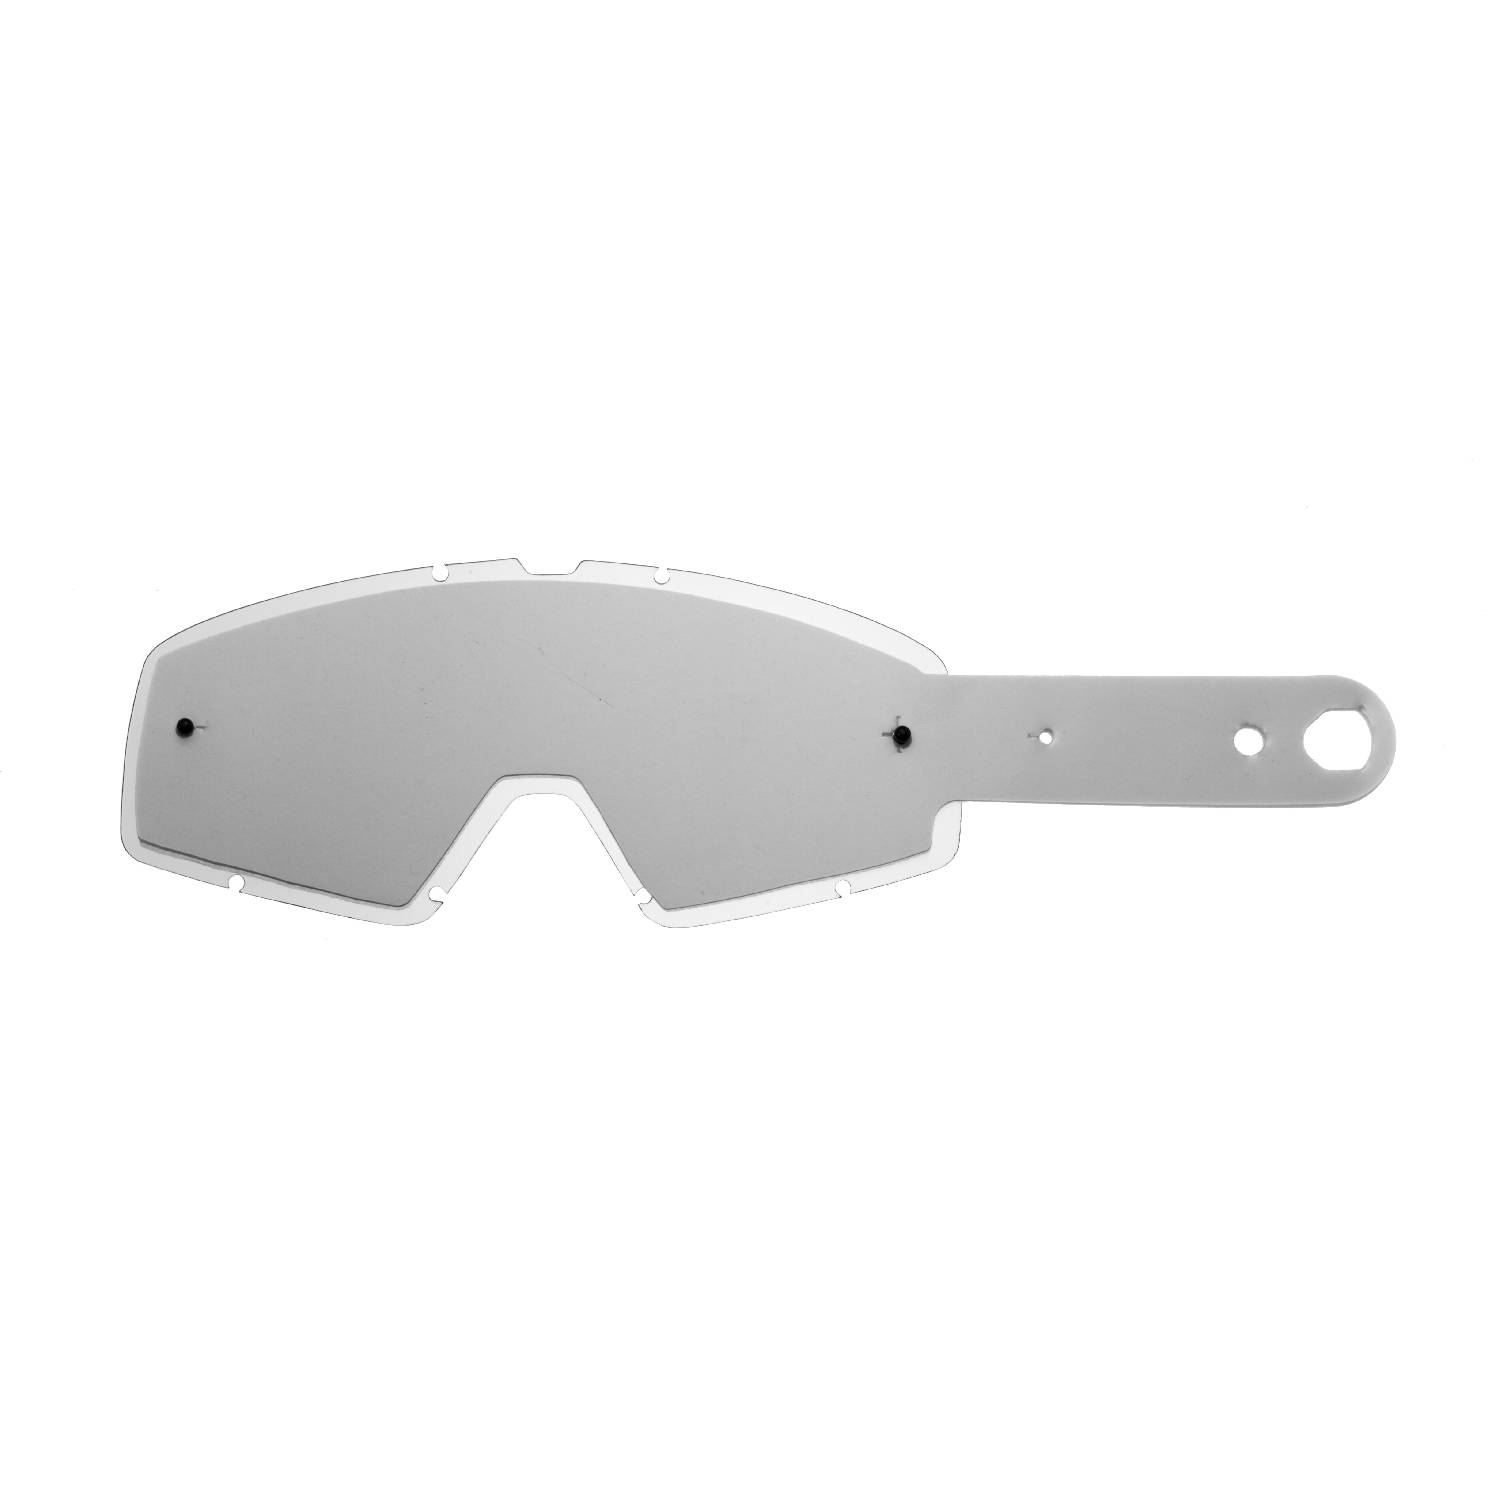 Lente trasparente + 10 Strappi (Combo) compatibile per occhiale/maschera Fox Main Pro Mx